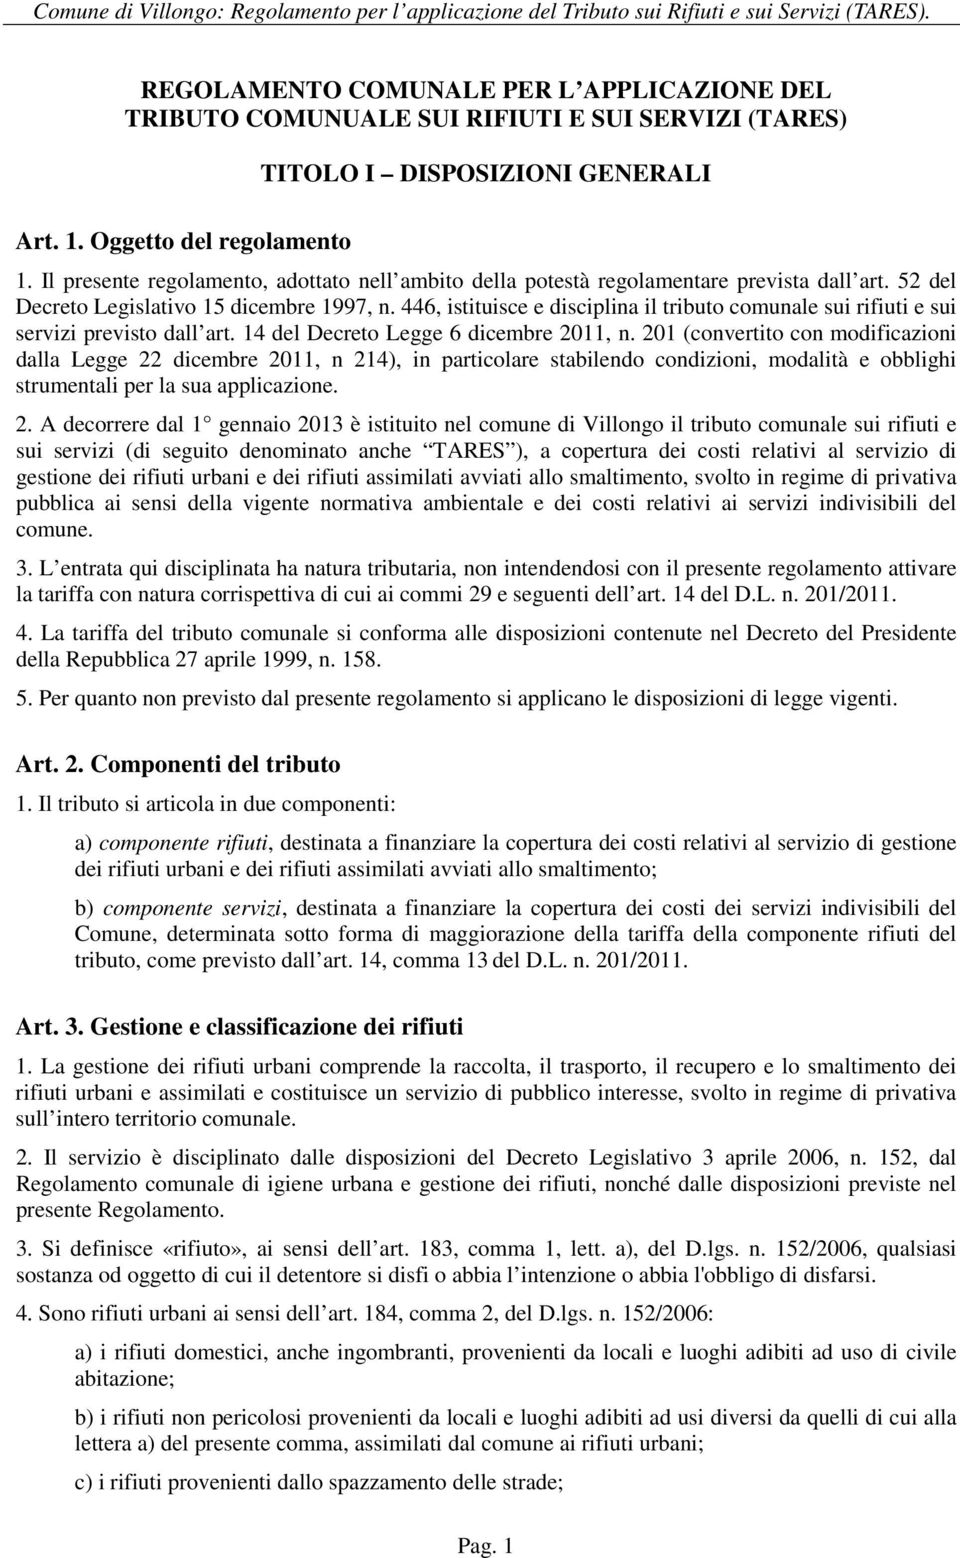 446, istituisce e disciplina il tributo comunale sui rifiuti e sui servizi previsto dall art. 14 del Decreto Legge 6 dicembre 2011, n.